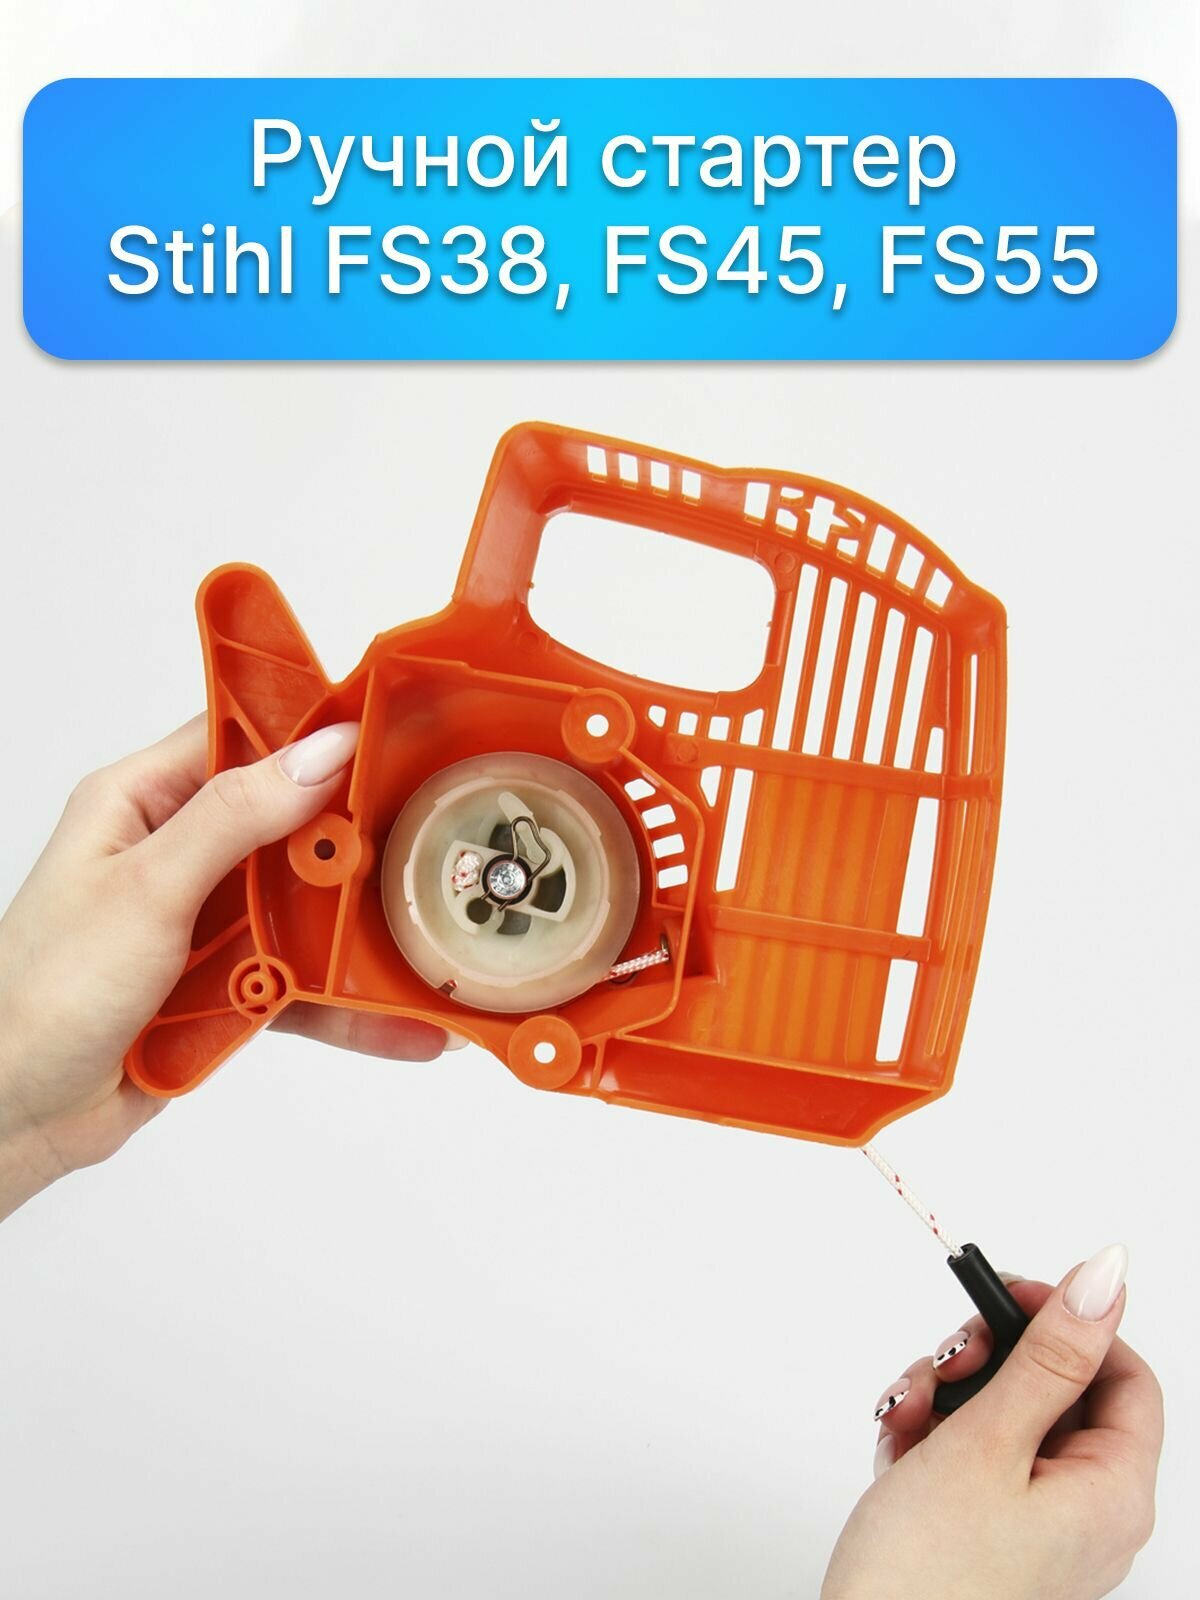 Ручной стартер для ремонта мотокосы STIHL FS38 / 45 / 55 (4140-190-4009D), запчасти для садовой техники